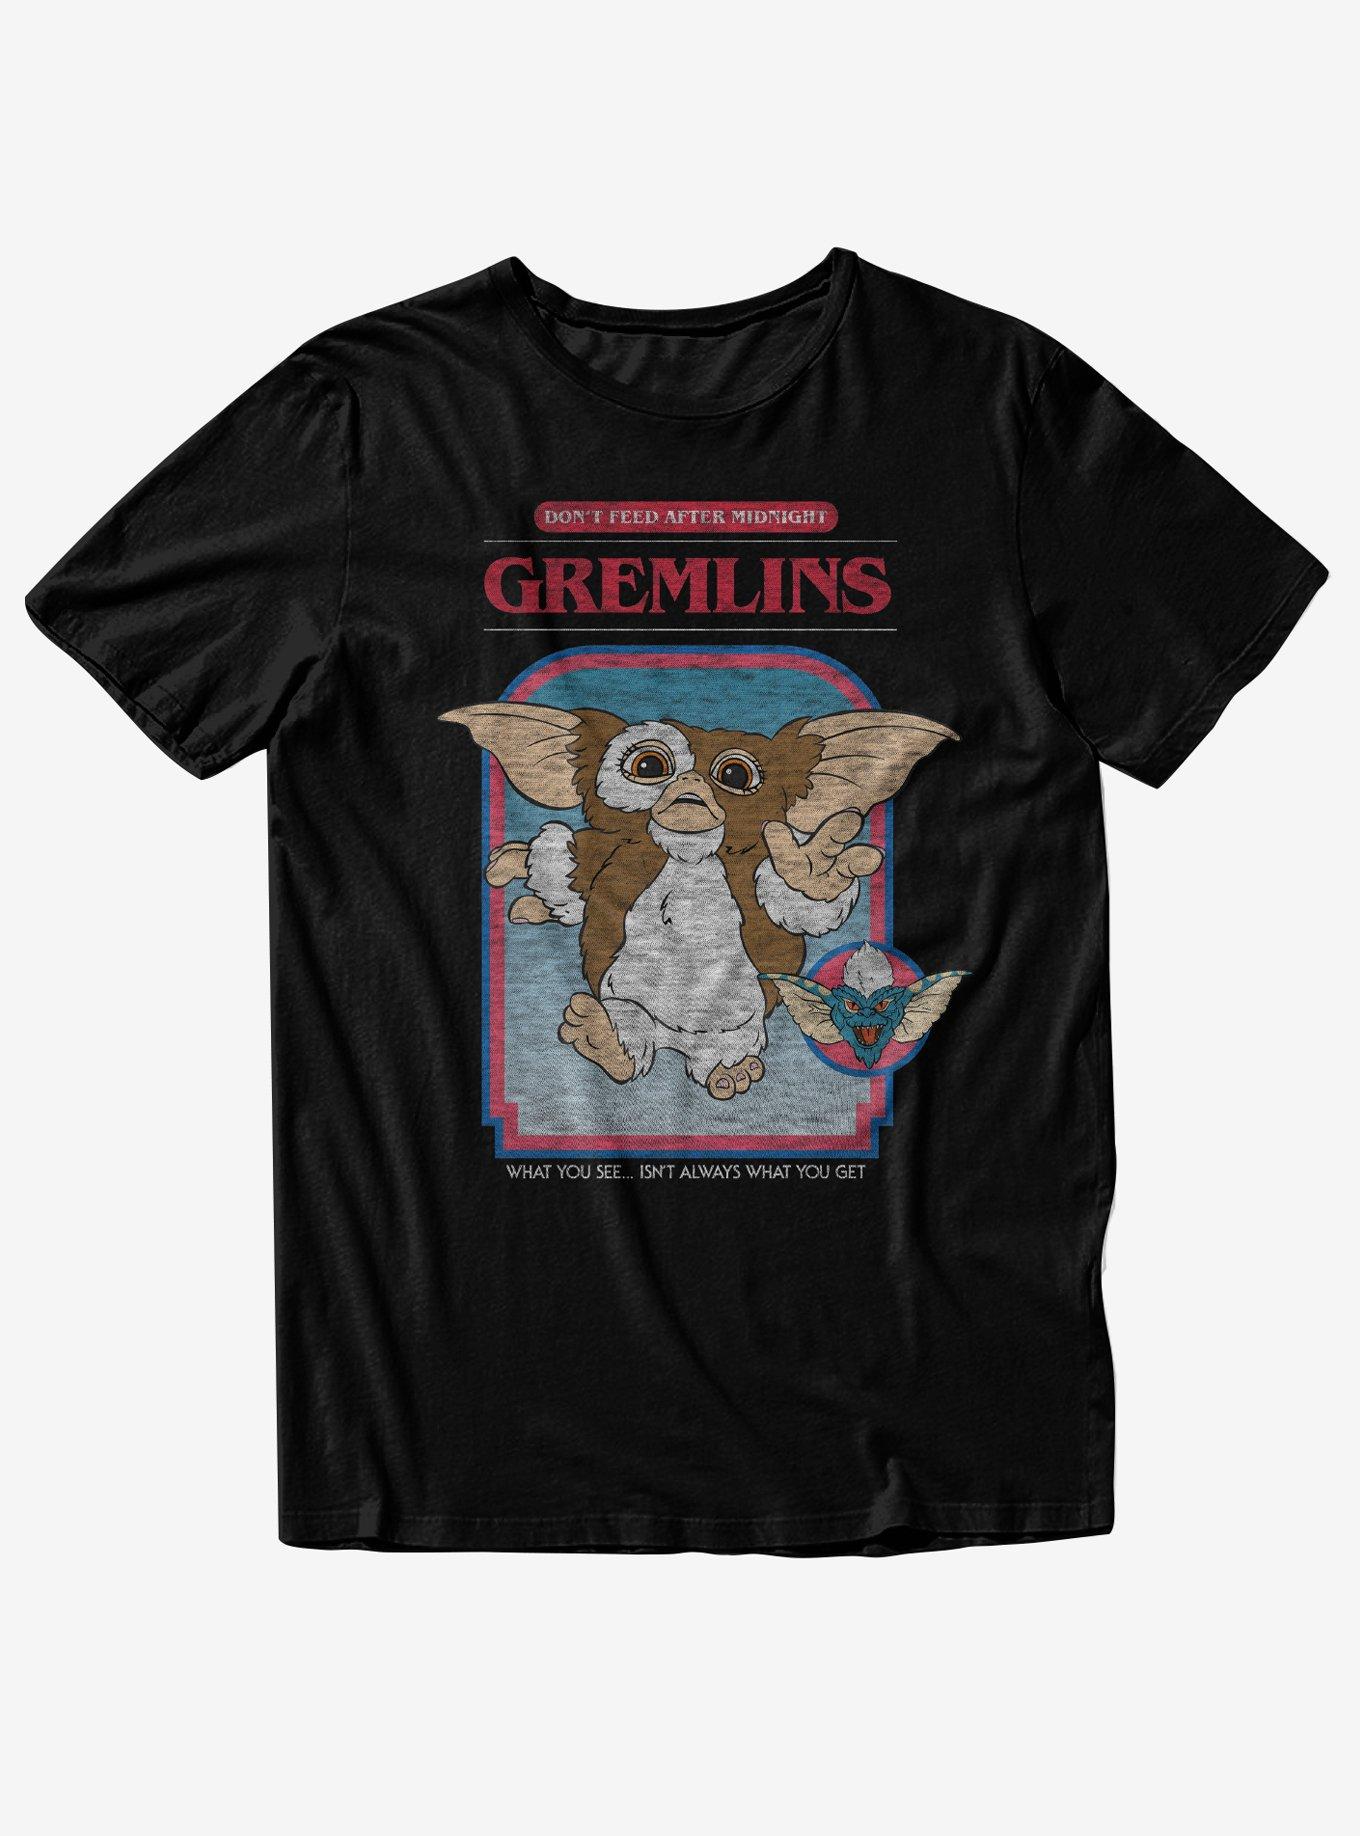 Gremlins Vintage Wash Boyfriend Fit Girls T-Shirt